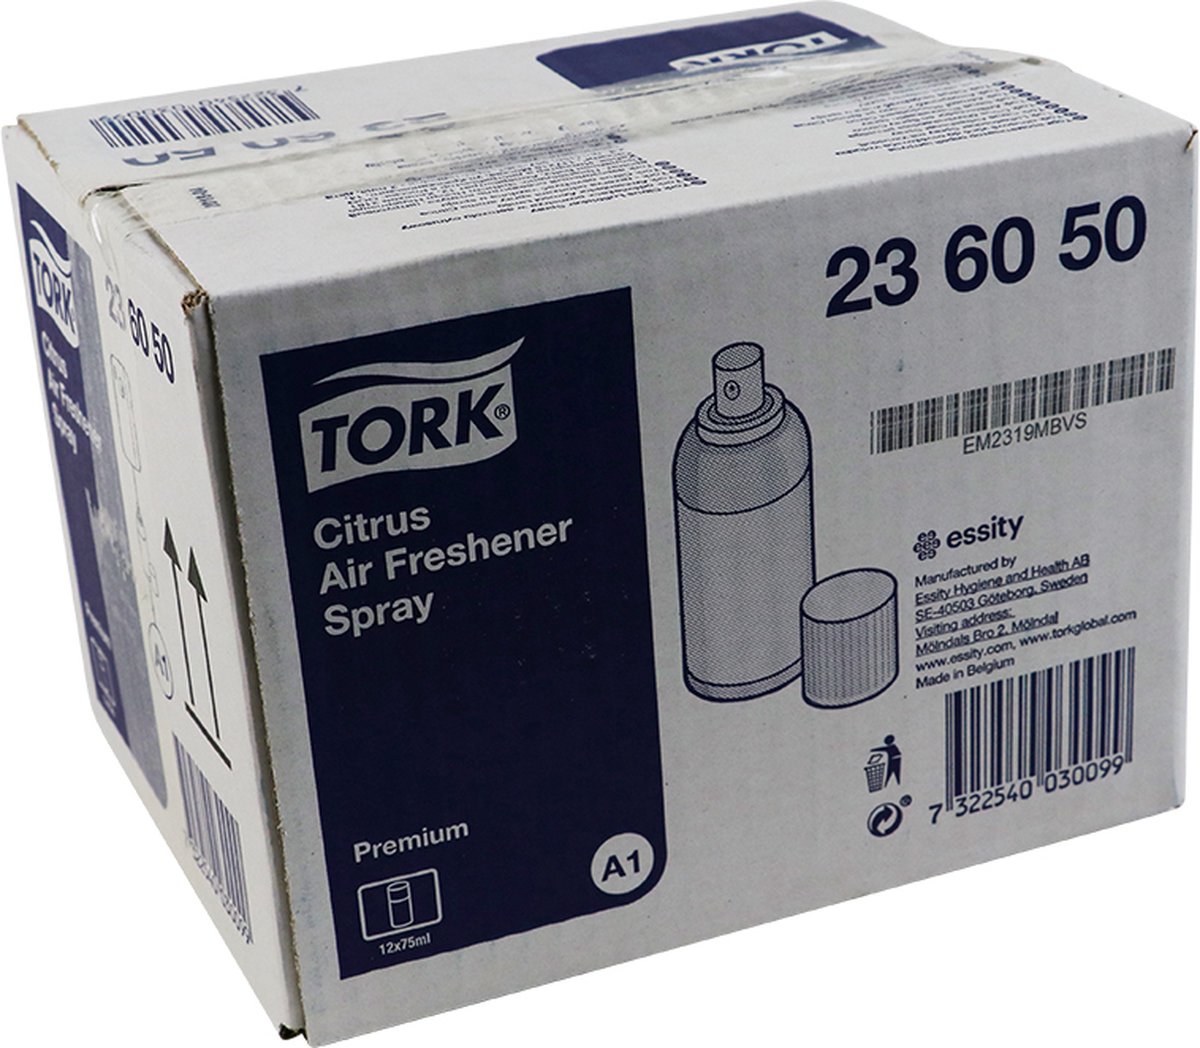 Voordeelverpakking 2 X Tork Luchtverfrisser Spray met Citrusgeur A1, aerosol, 12x75ml (236050)